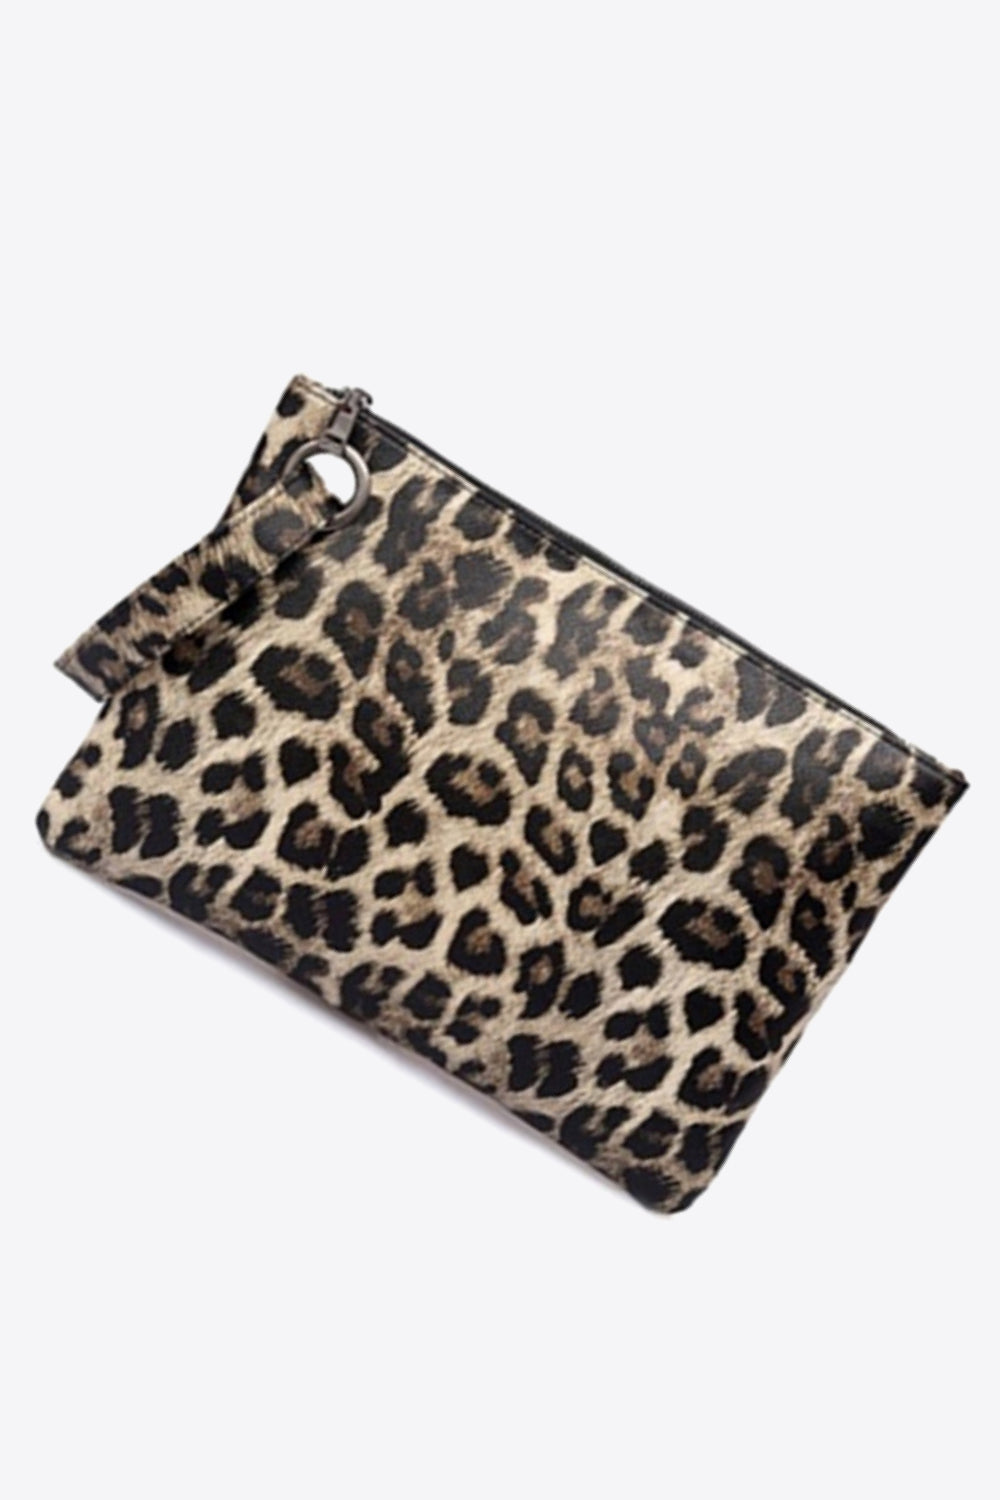 Leopard PU Leather Clutch COCO CRESS